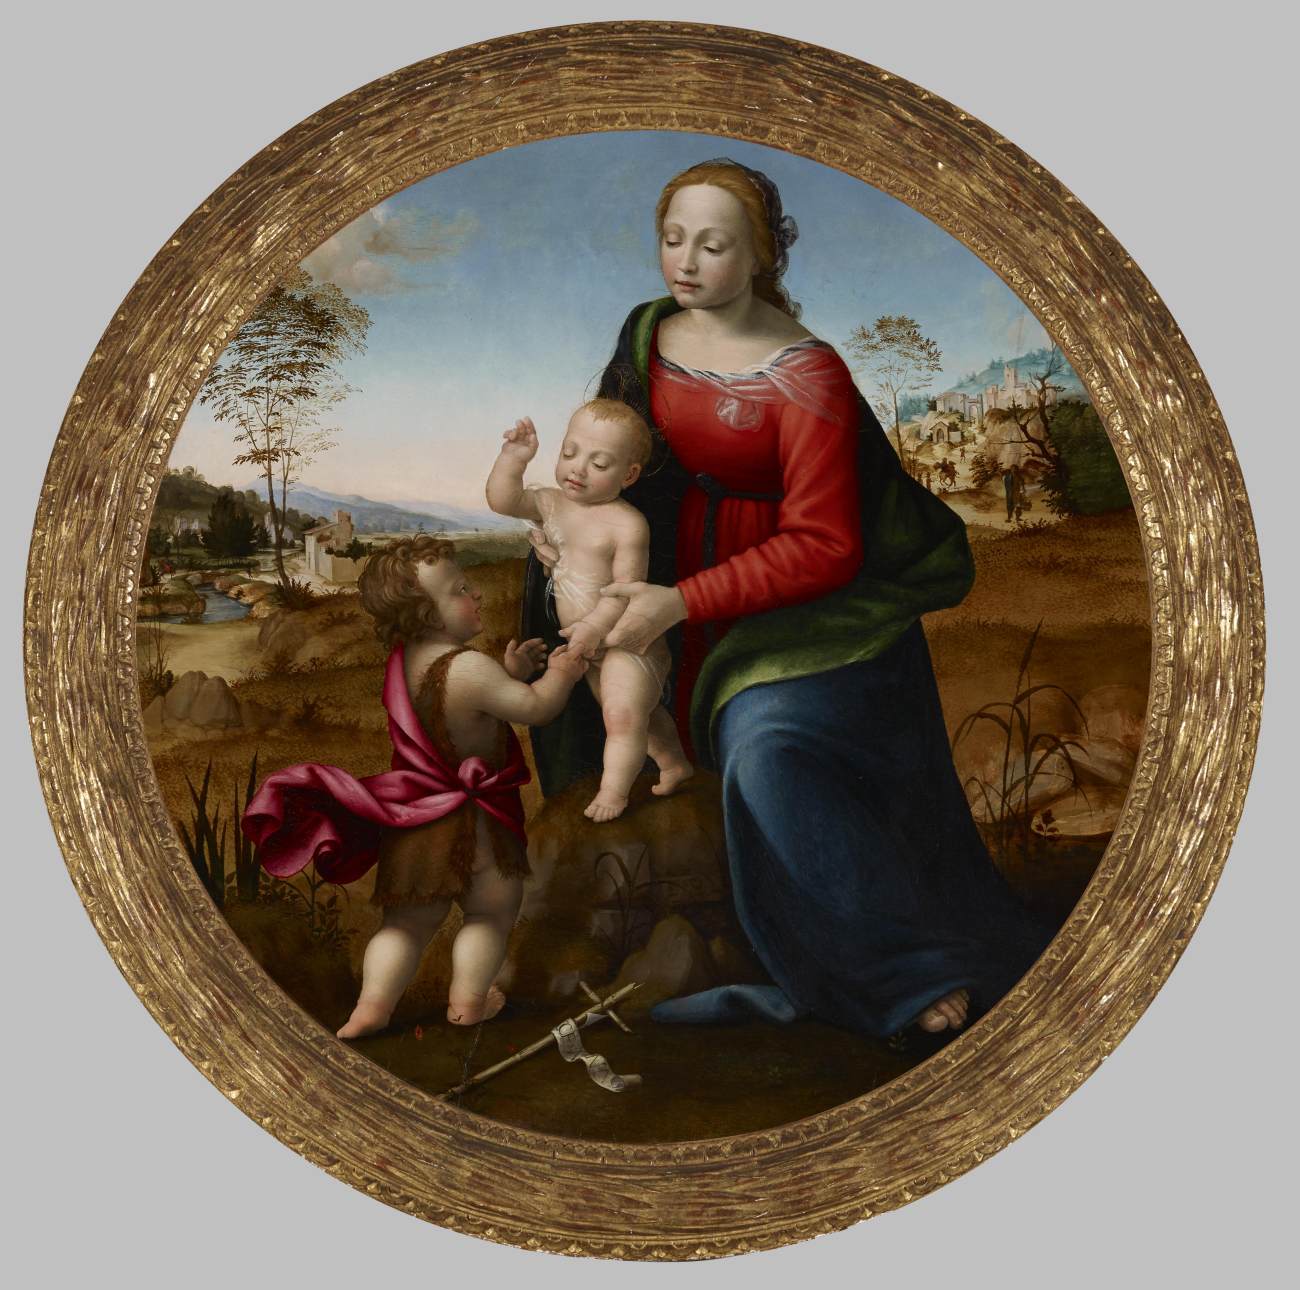 La vierge et l'enfant avec le bébé San Juan Bautista